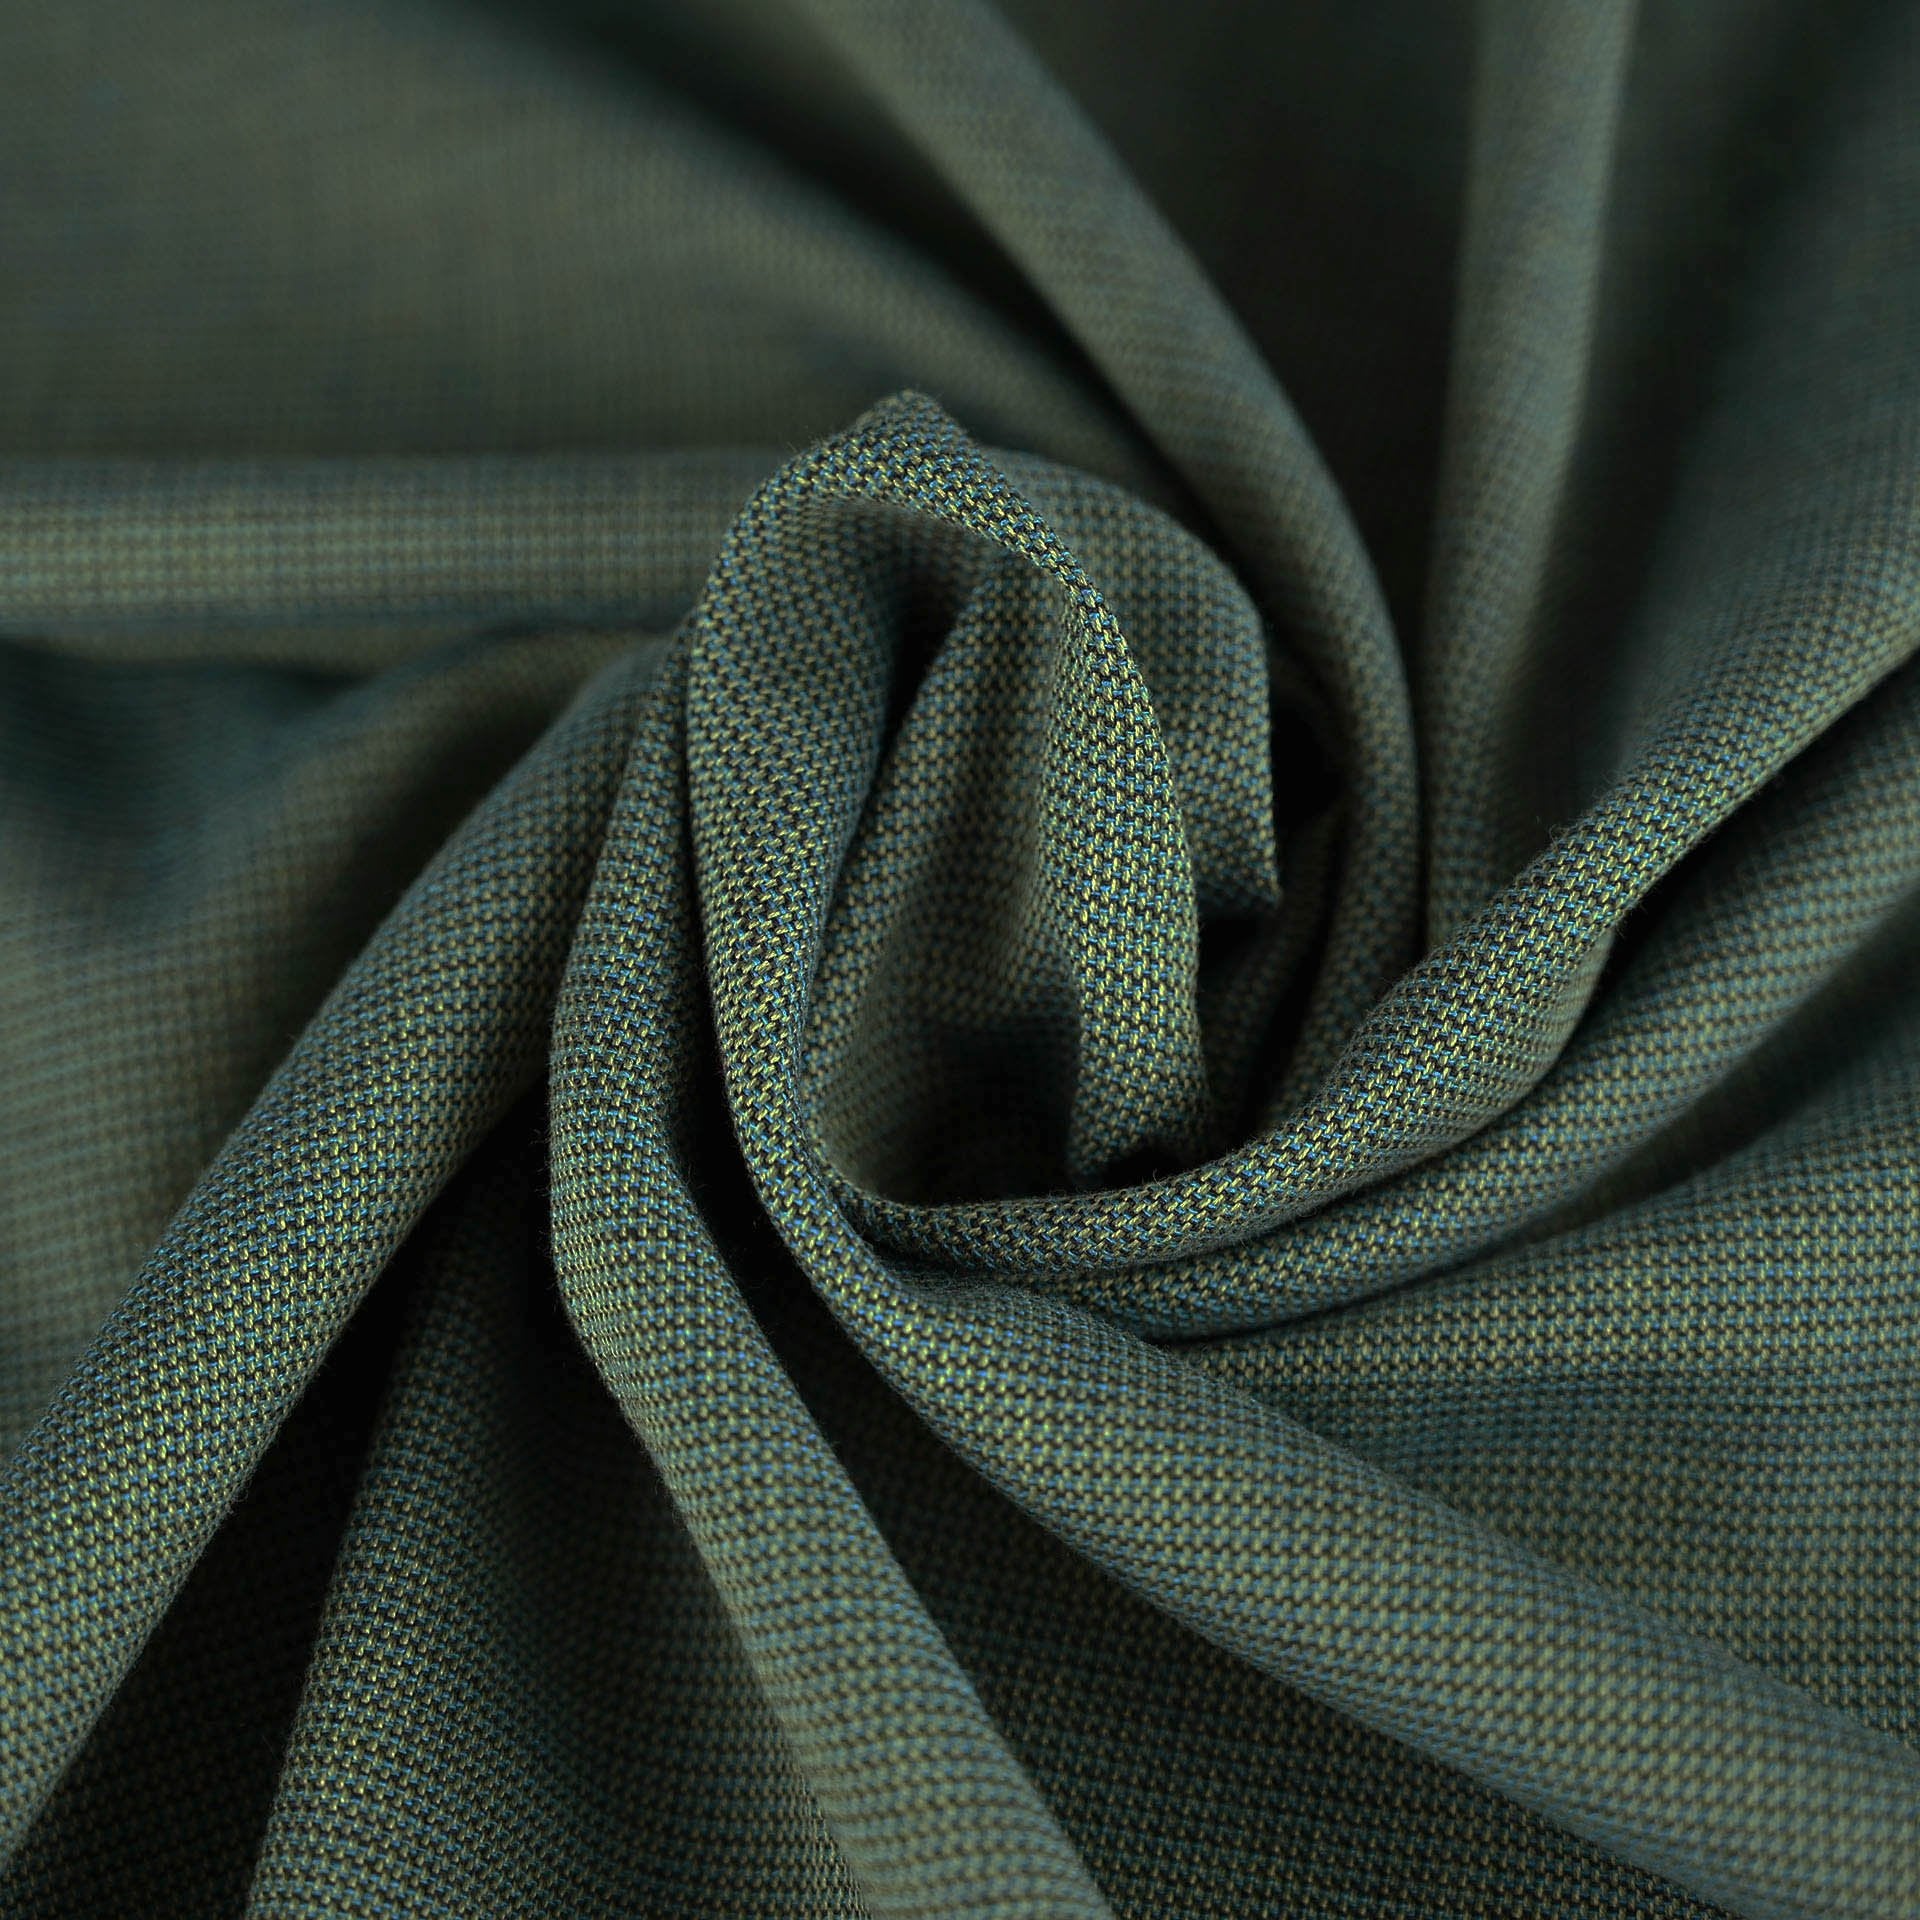 http://fabrics4fashion.com/cdn/shop/products/Green_Cotton_Blend_5538.jpg?v=1643656200